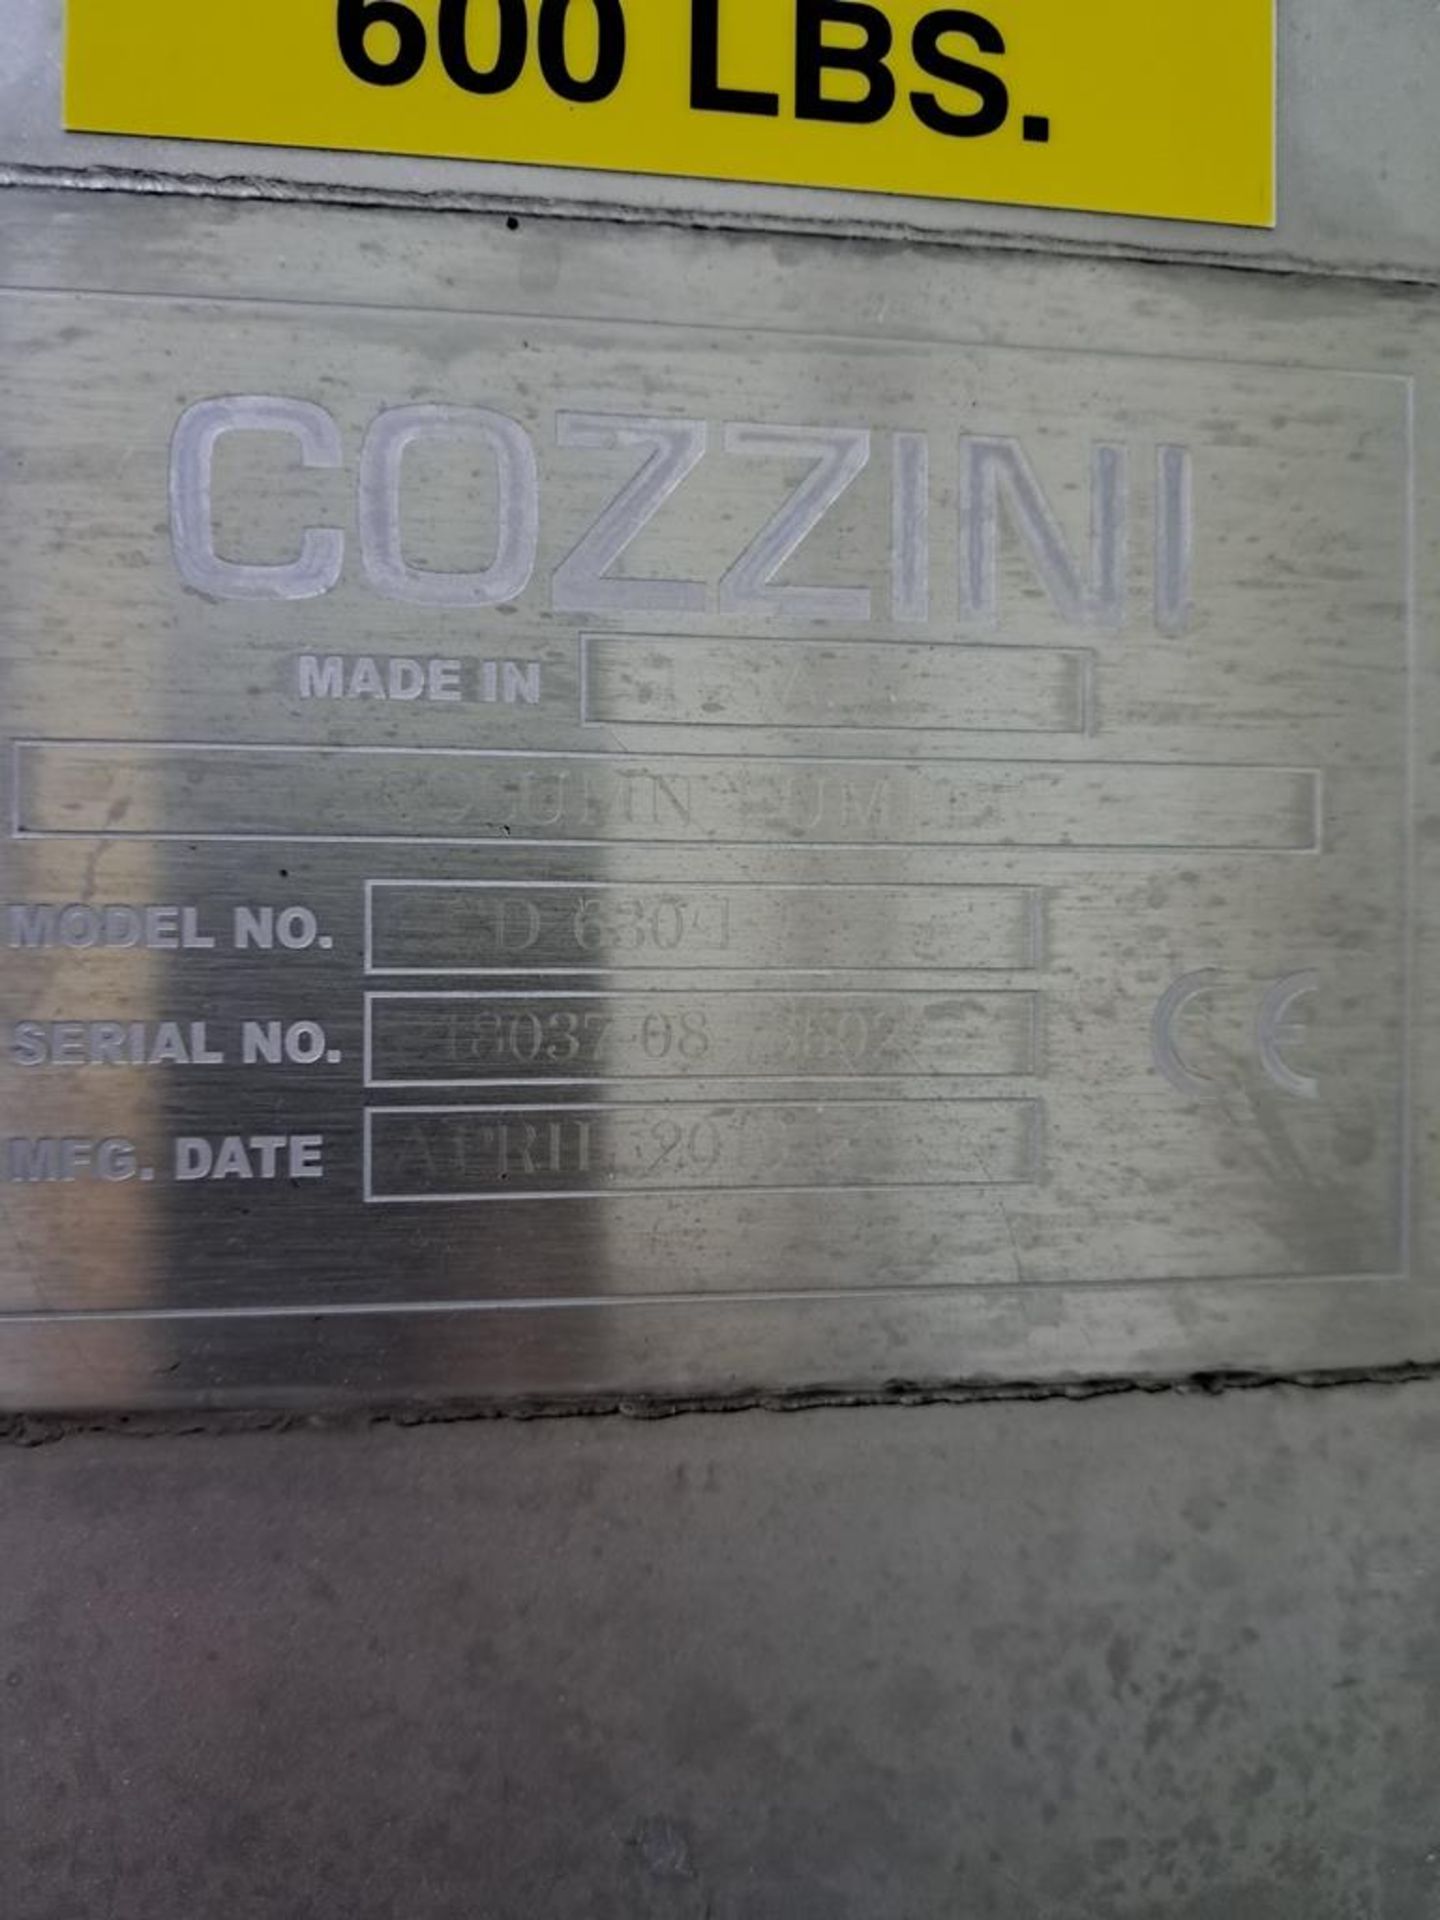 Cozzini Mdl. CCD630-1 Portable Stainless Steel Column Dumper, Ser. #P18037-08-73502, 92" dump - Image 5 of 5